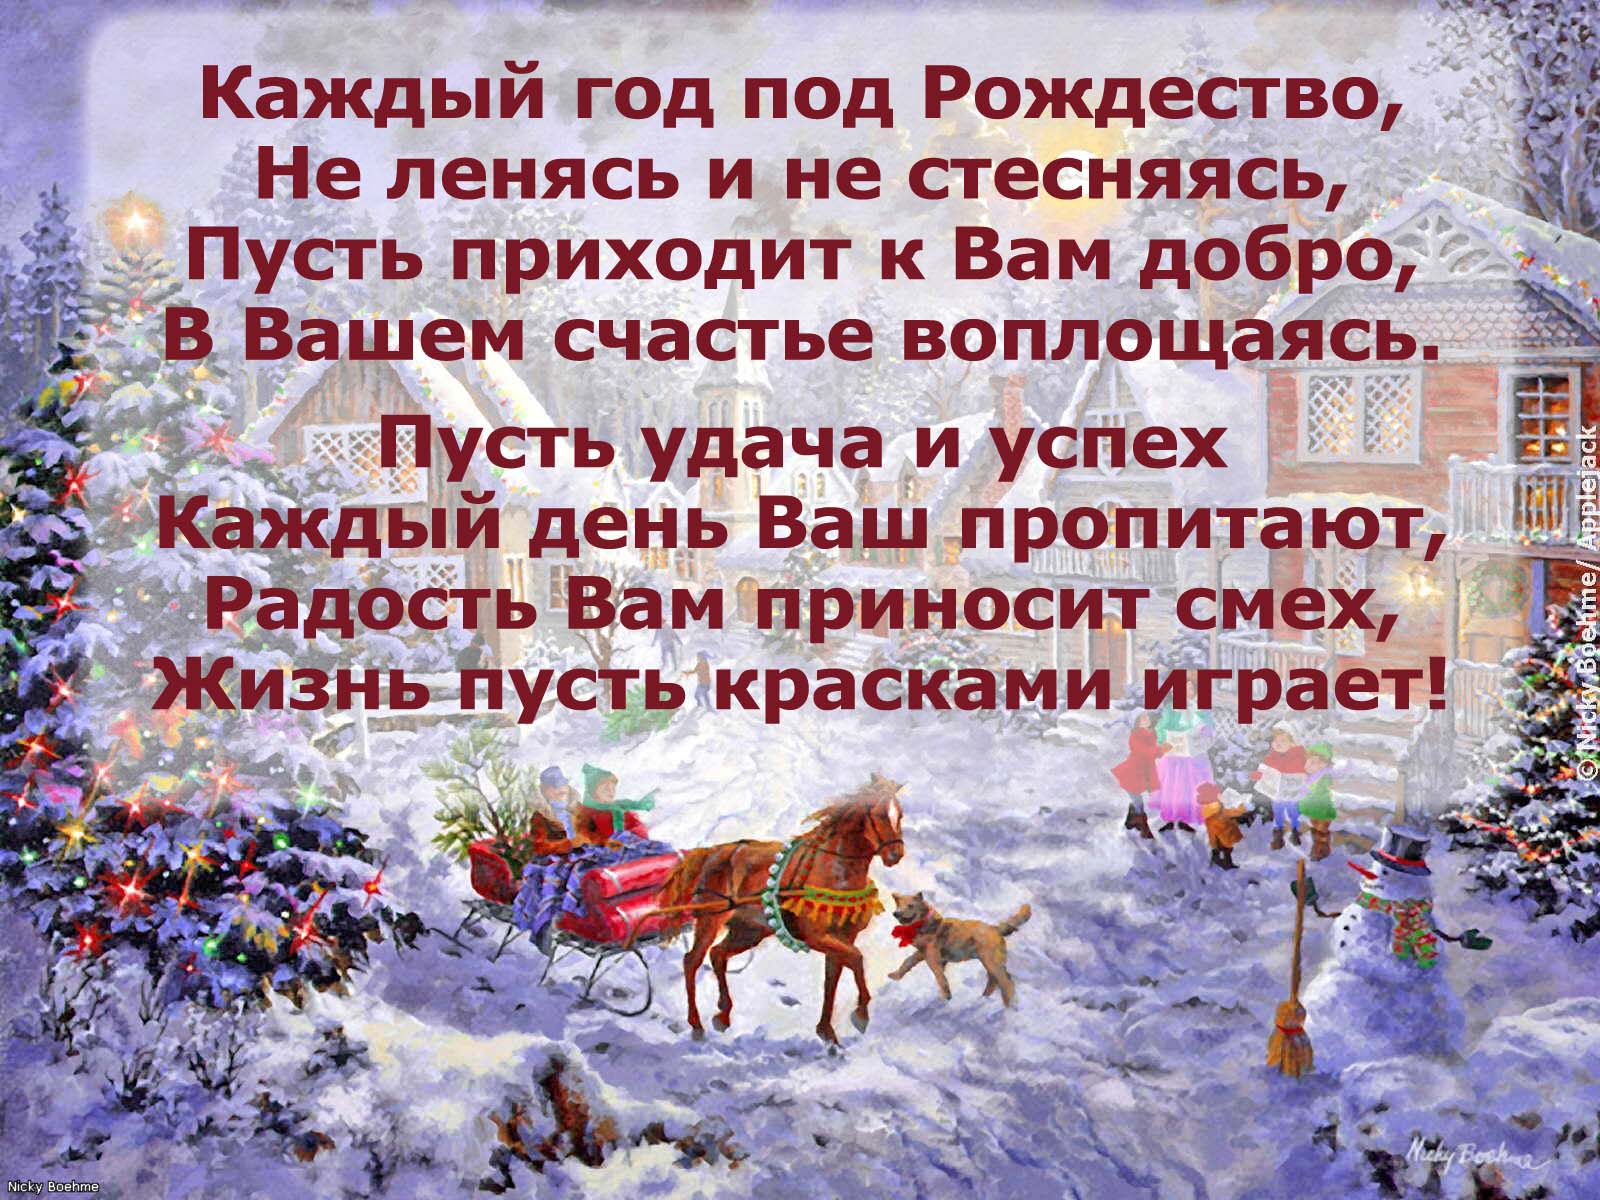 Какой праздник с 6 на 7 января. Поздравление с Рождеством. Открытка с Рождеством!. 7 Января Рождество Христово. Поздравление с Рождеством на украинском.